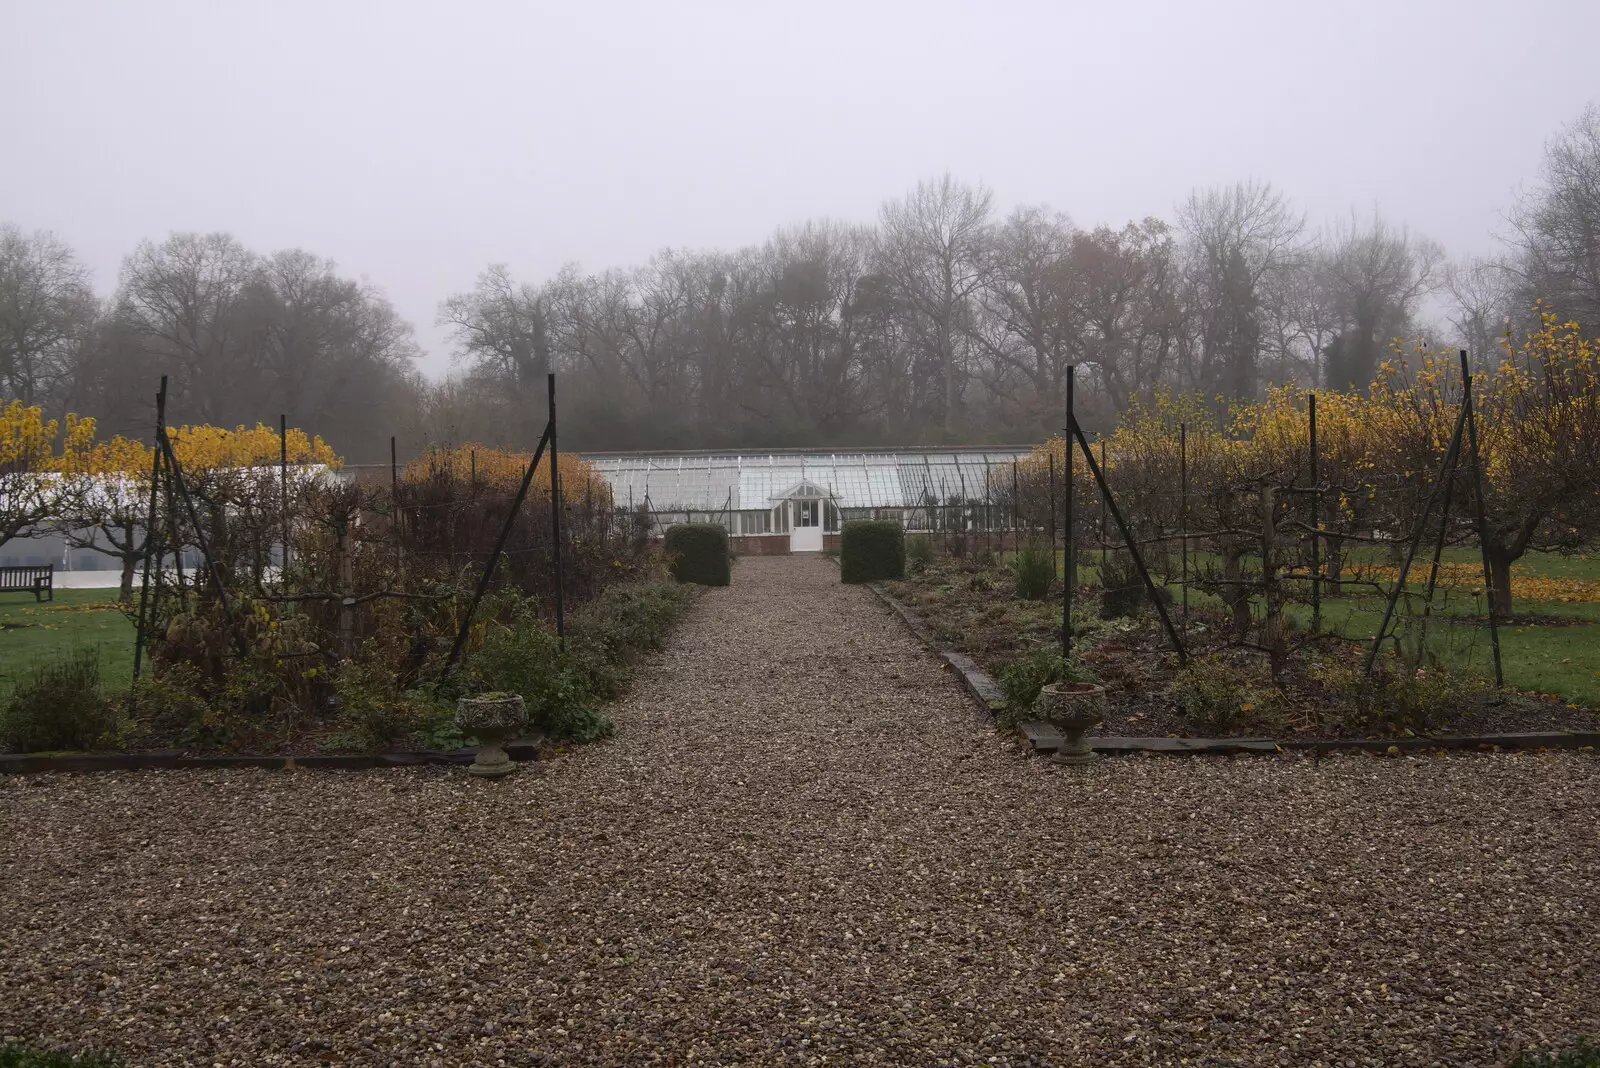 The walled garden in the sad mist of winter, from A Return to Thornham Walks, Thornham, Suffolk - 19th December 2021